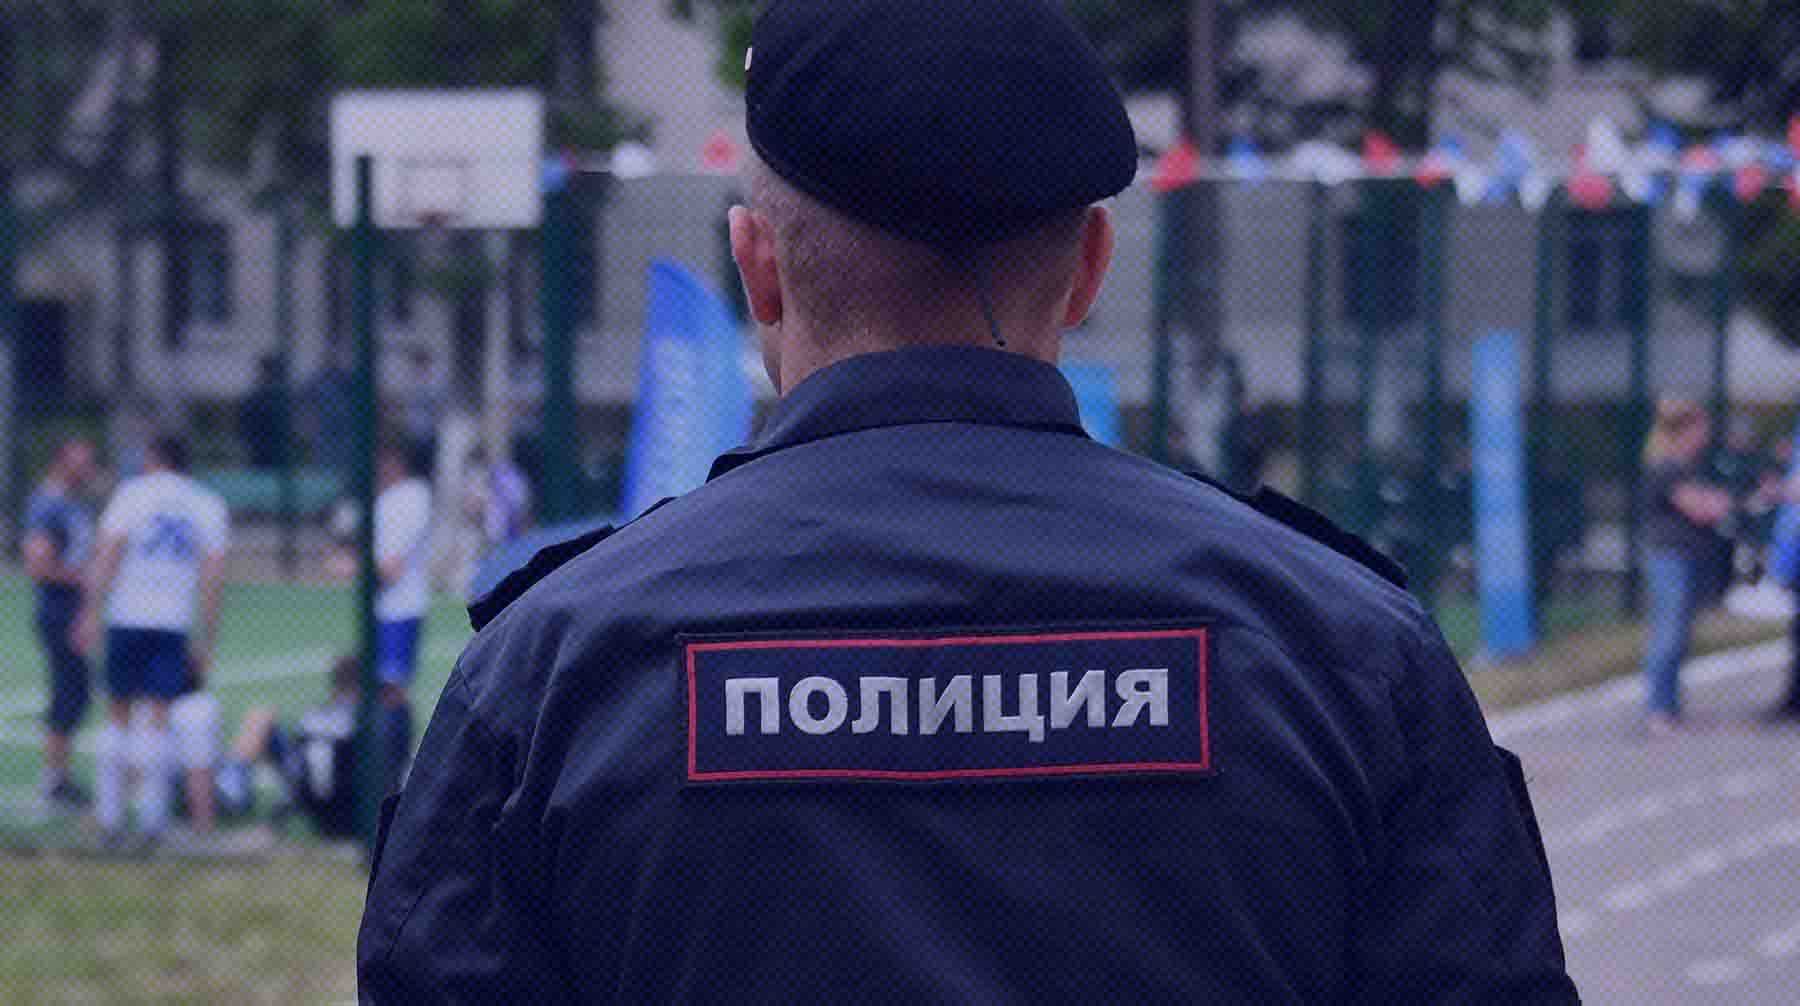 На жителя Челябинска завели дело о возбуждении ненависти или вражды Фото: Global Look Press /Комсомольская правда